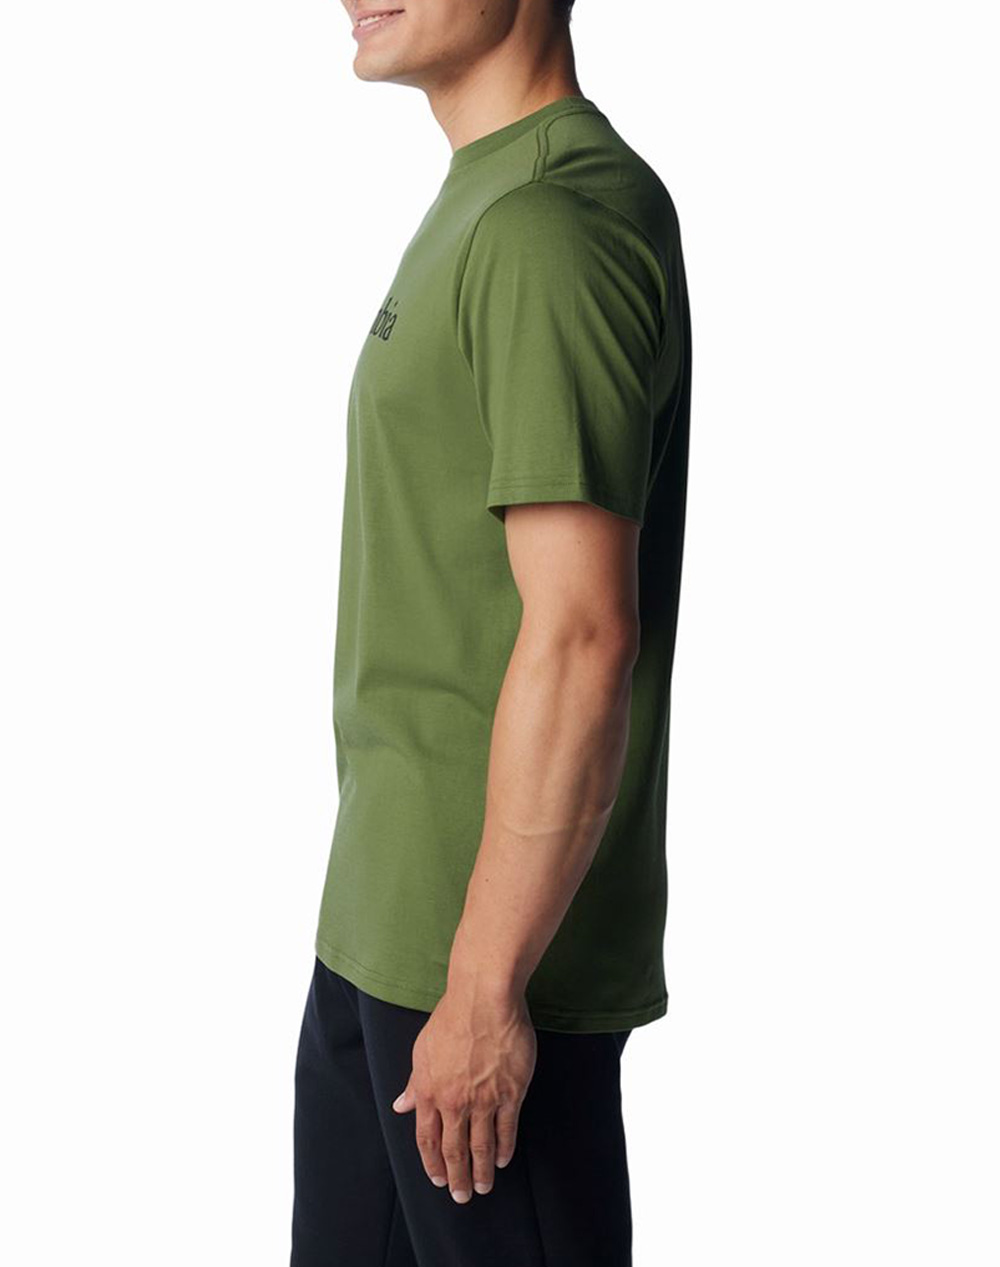 COLUMBIA Pánské tričko CSC Basic Logo™ Short Sleeve